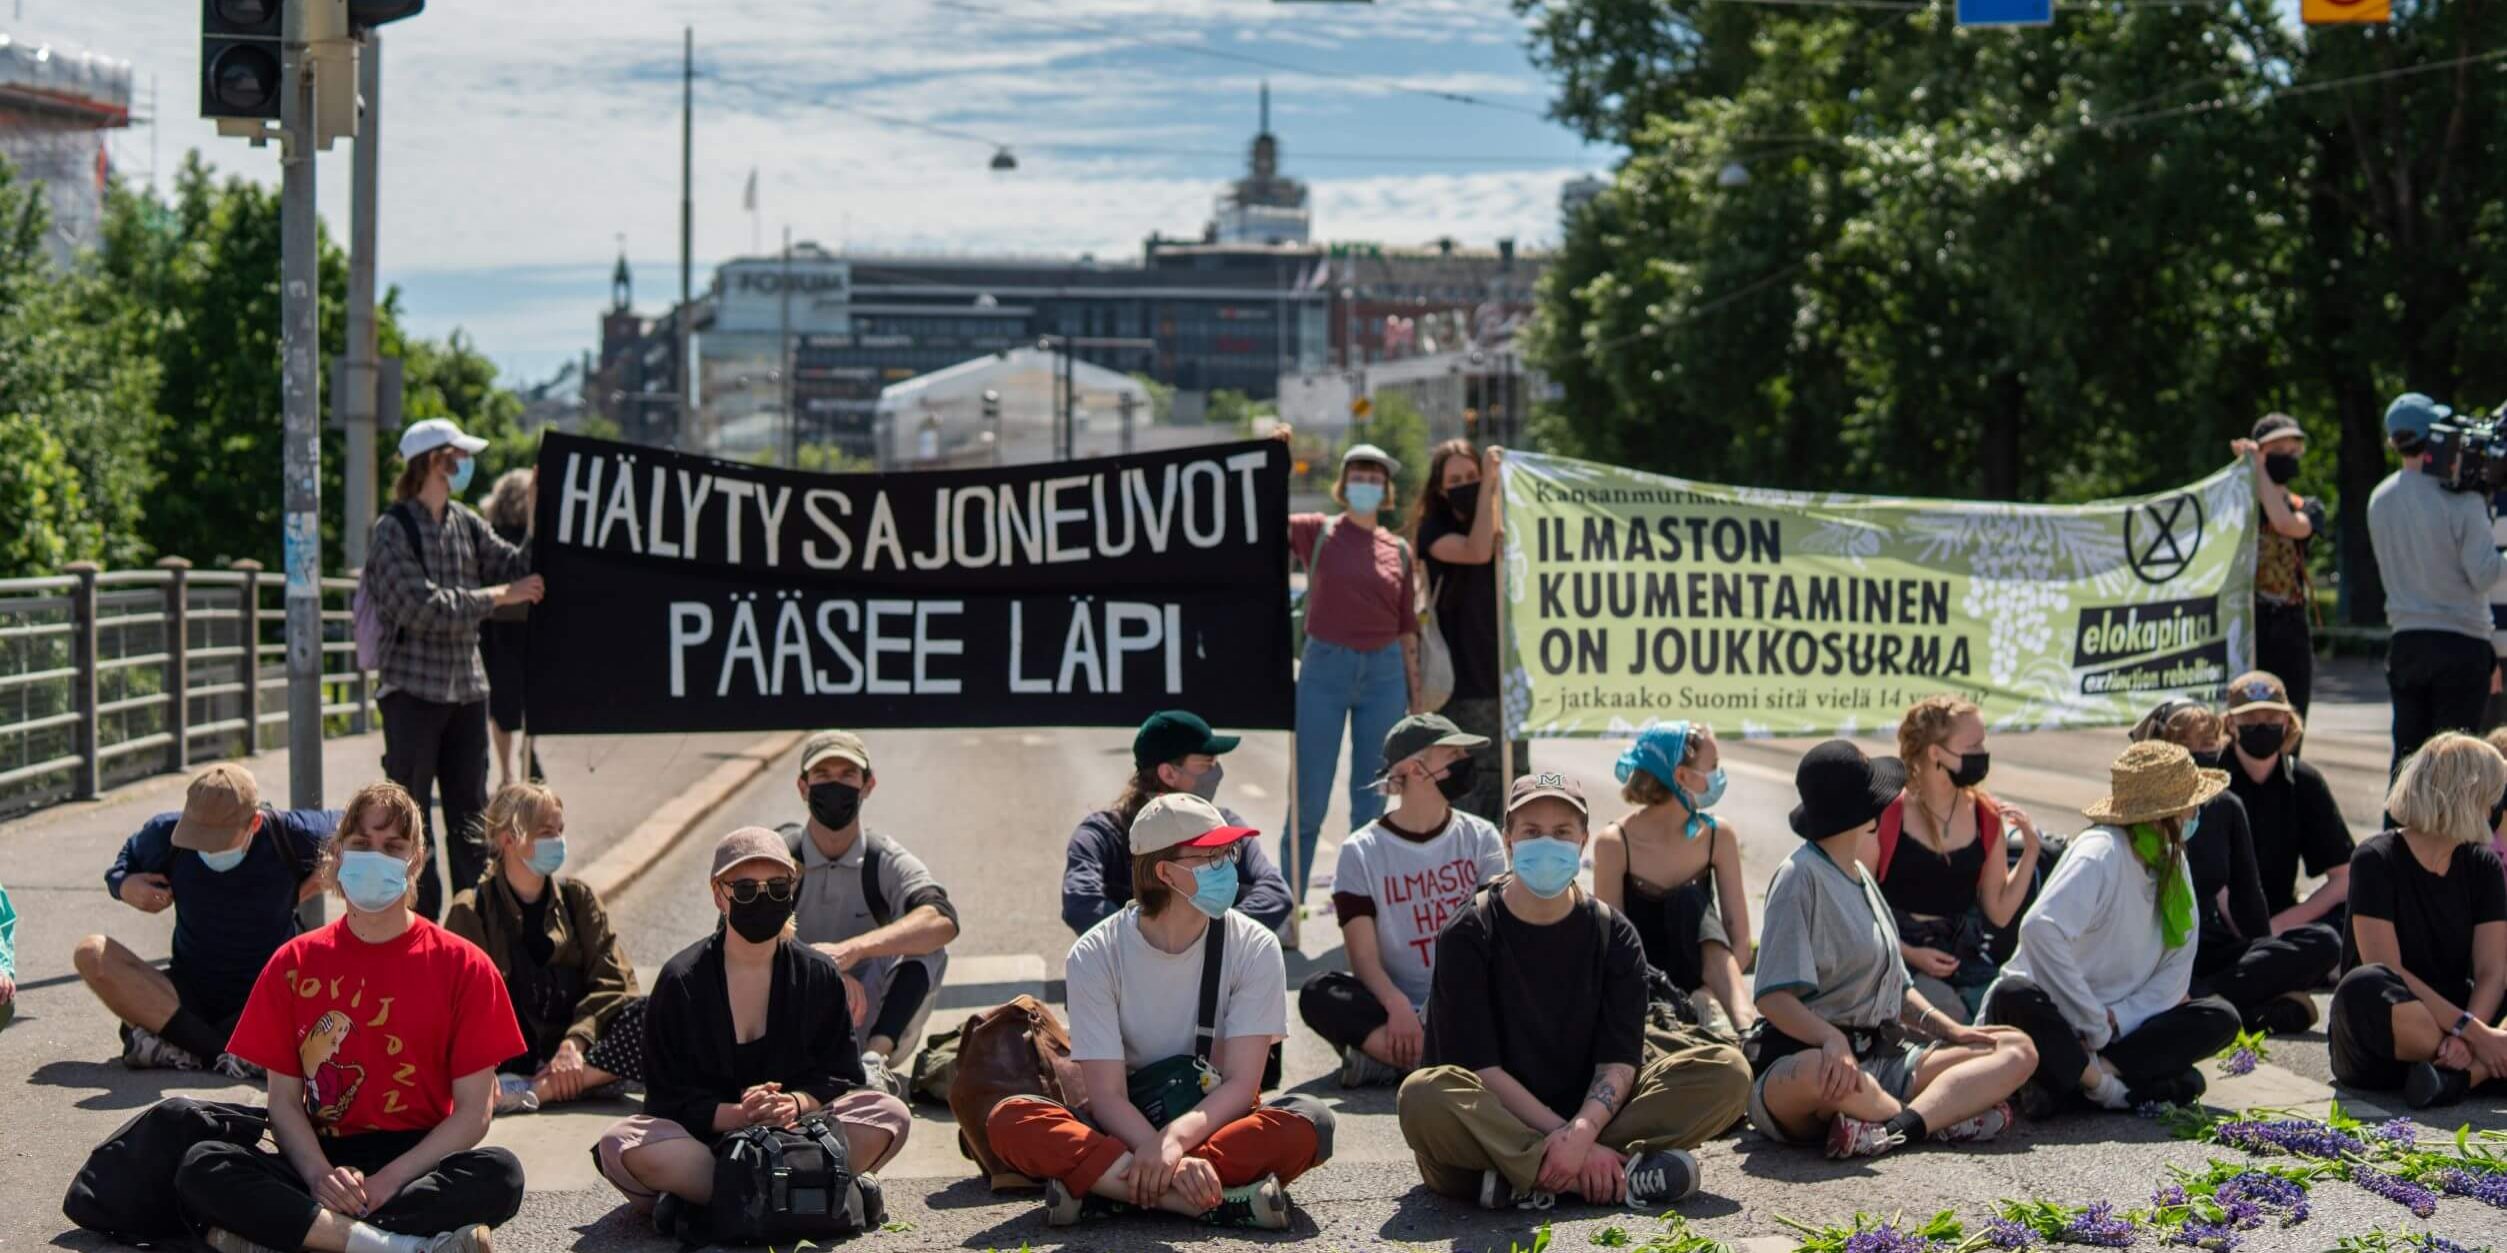 Mielenosoittajia istumassa ajoväylällä Elokapinan mielenosoituksessa.